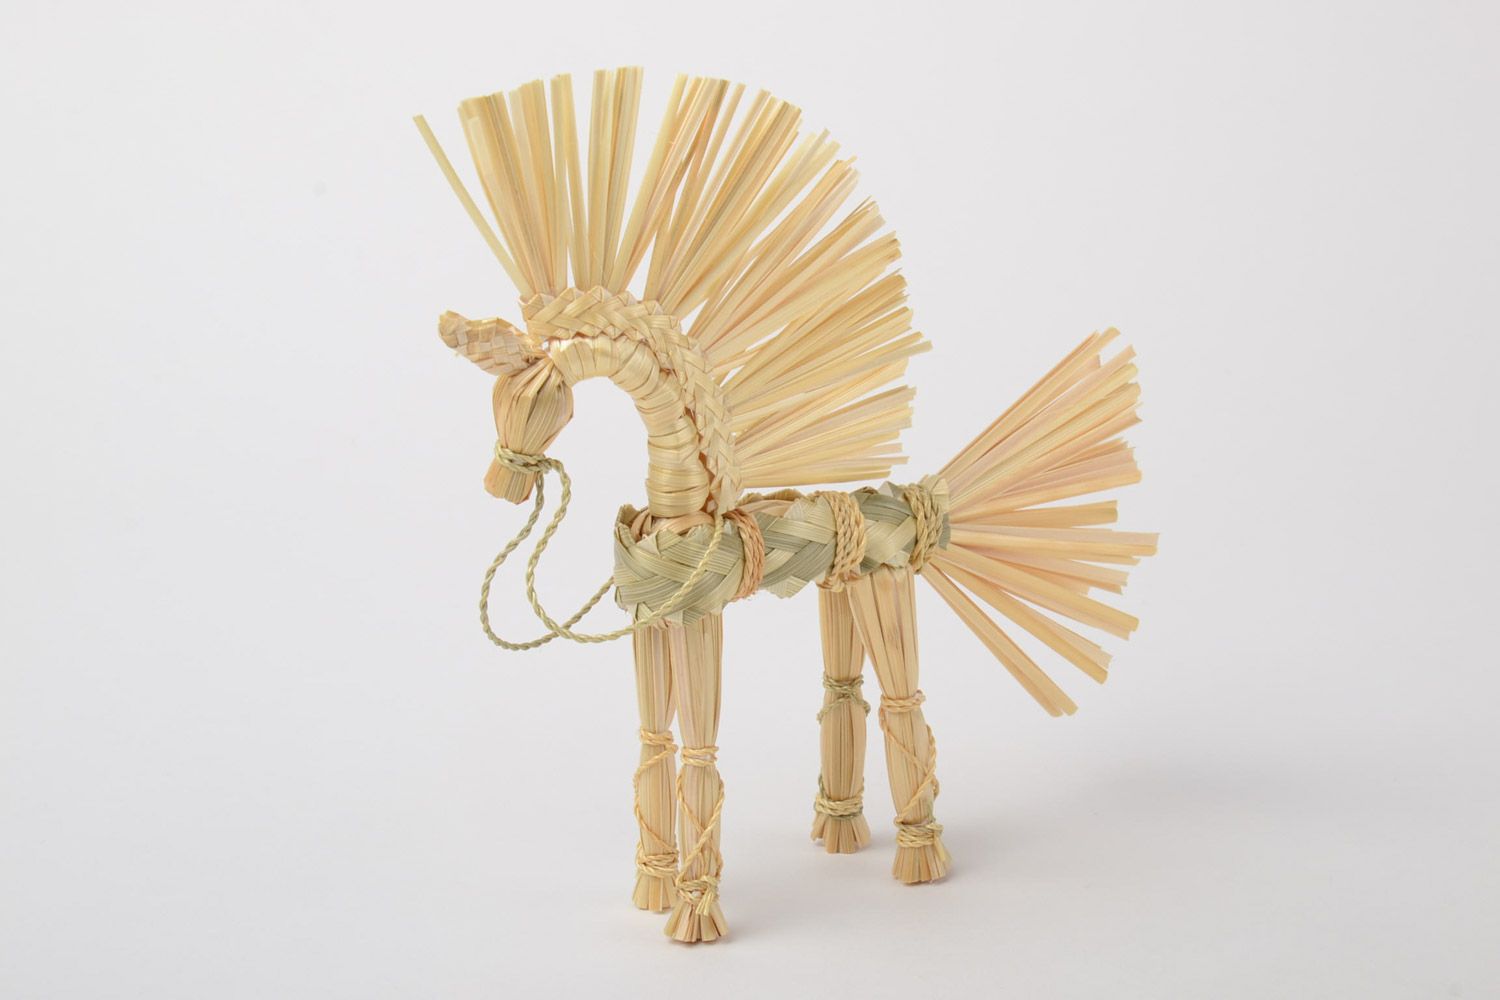 Handmade Spielzeug aus Stroh in Form von geflochtenem Pferd slawisch klein schön foto 2